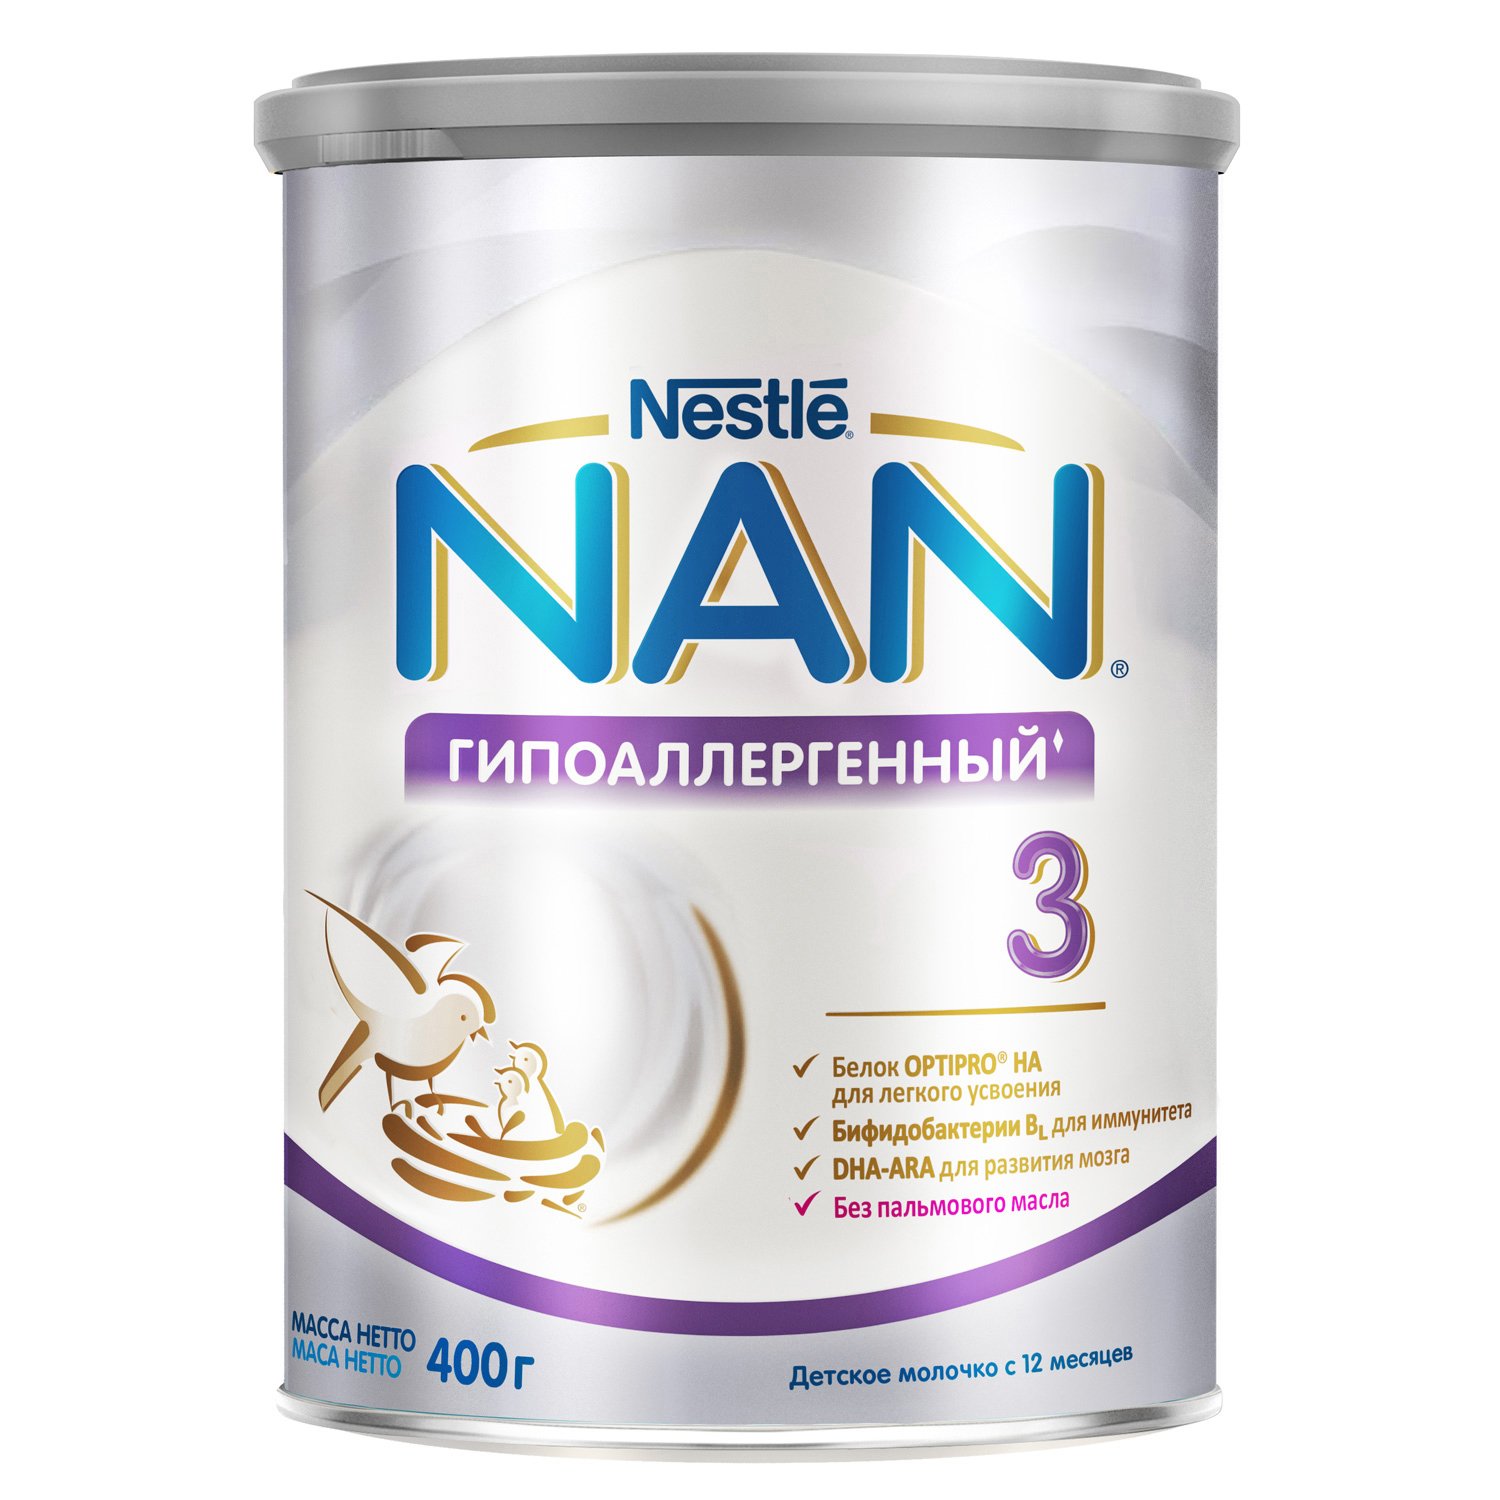 NAN 3 Optipro Гипоаллергенный детское молочко - 400 г